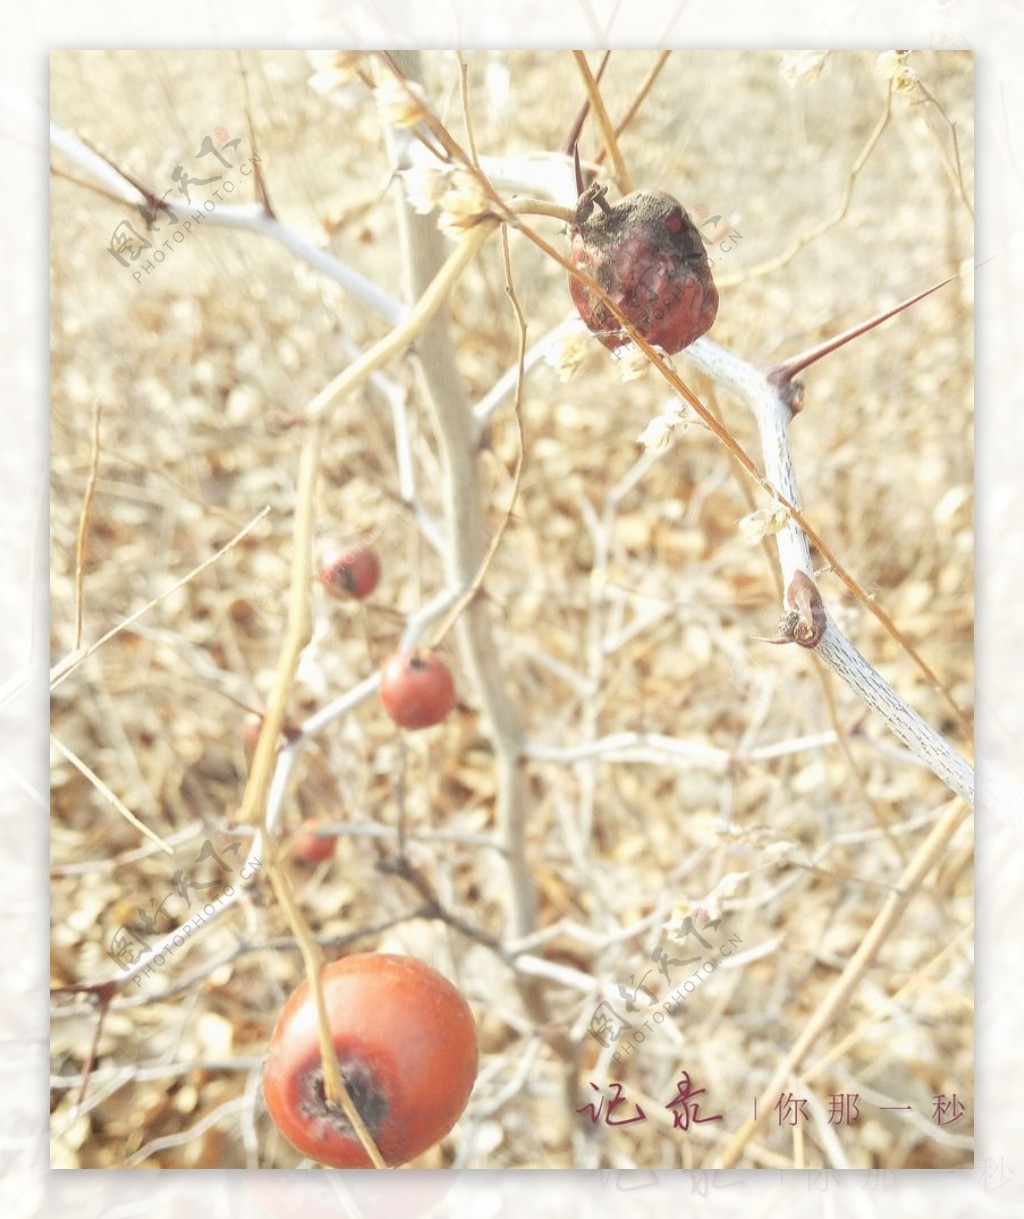 冬天的酸枣树